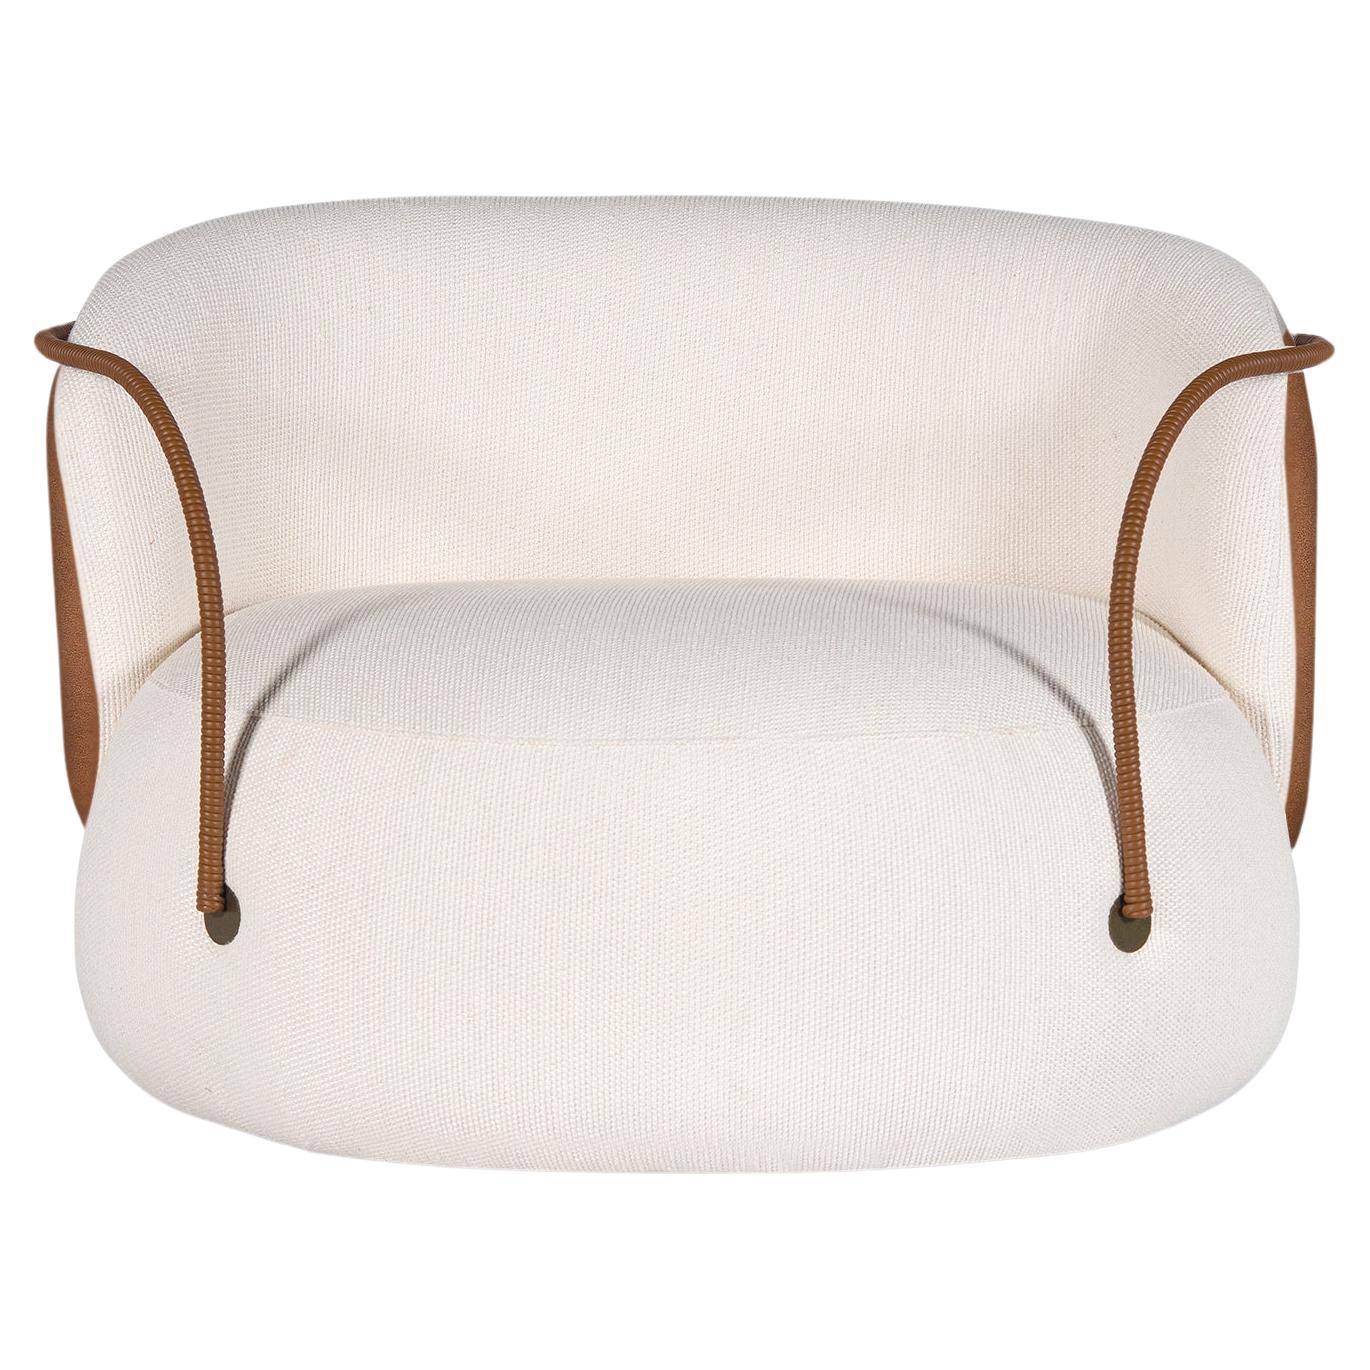 Pietra de l'italien : pierre
Le fauteuil pivotant Pietra est conçu avec des formes pures et organiques. Recouvert d'un mélange de tissus confortables : boucle blanc cassé sur le devant et polyester avec une finition 